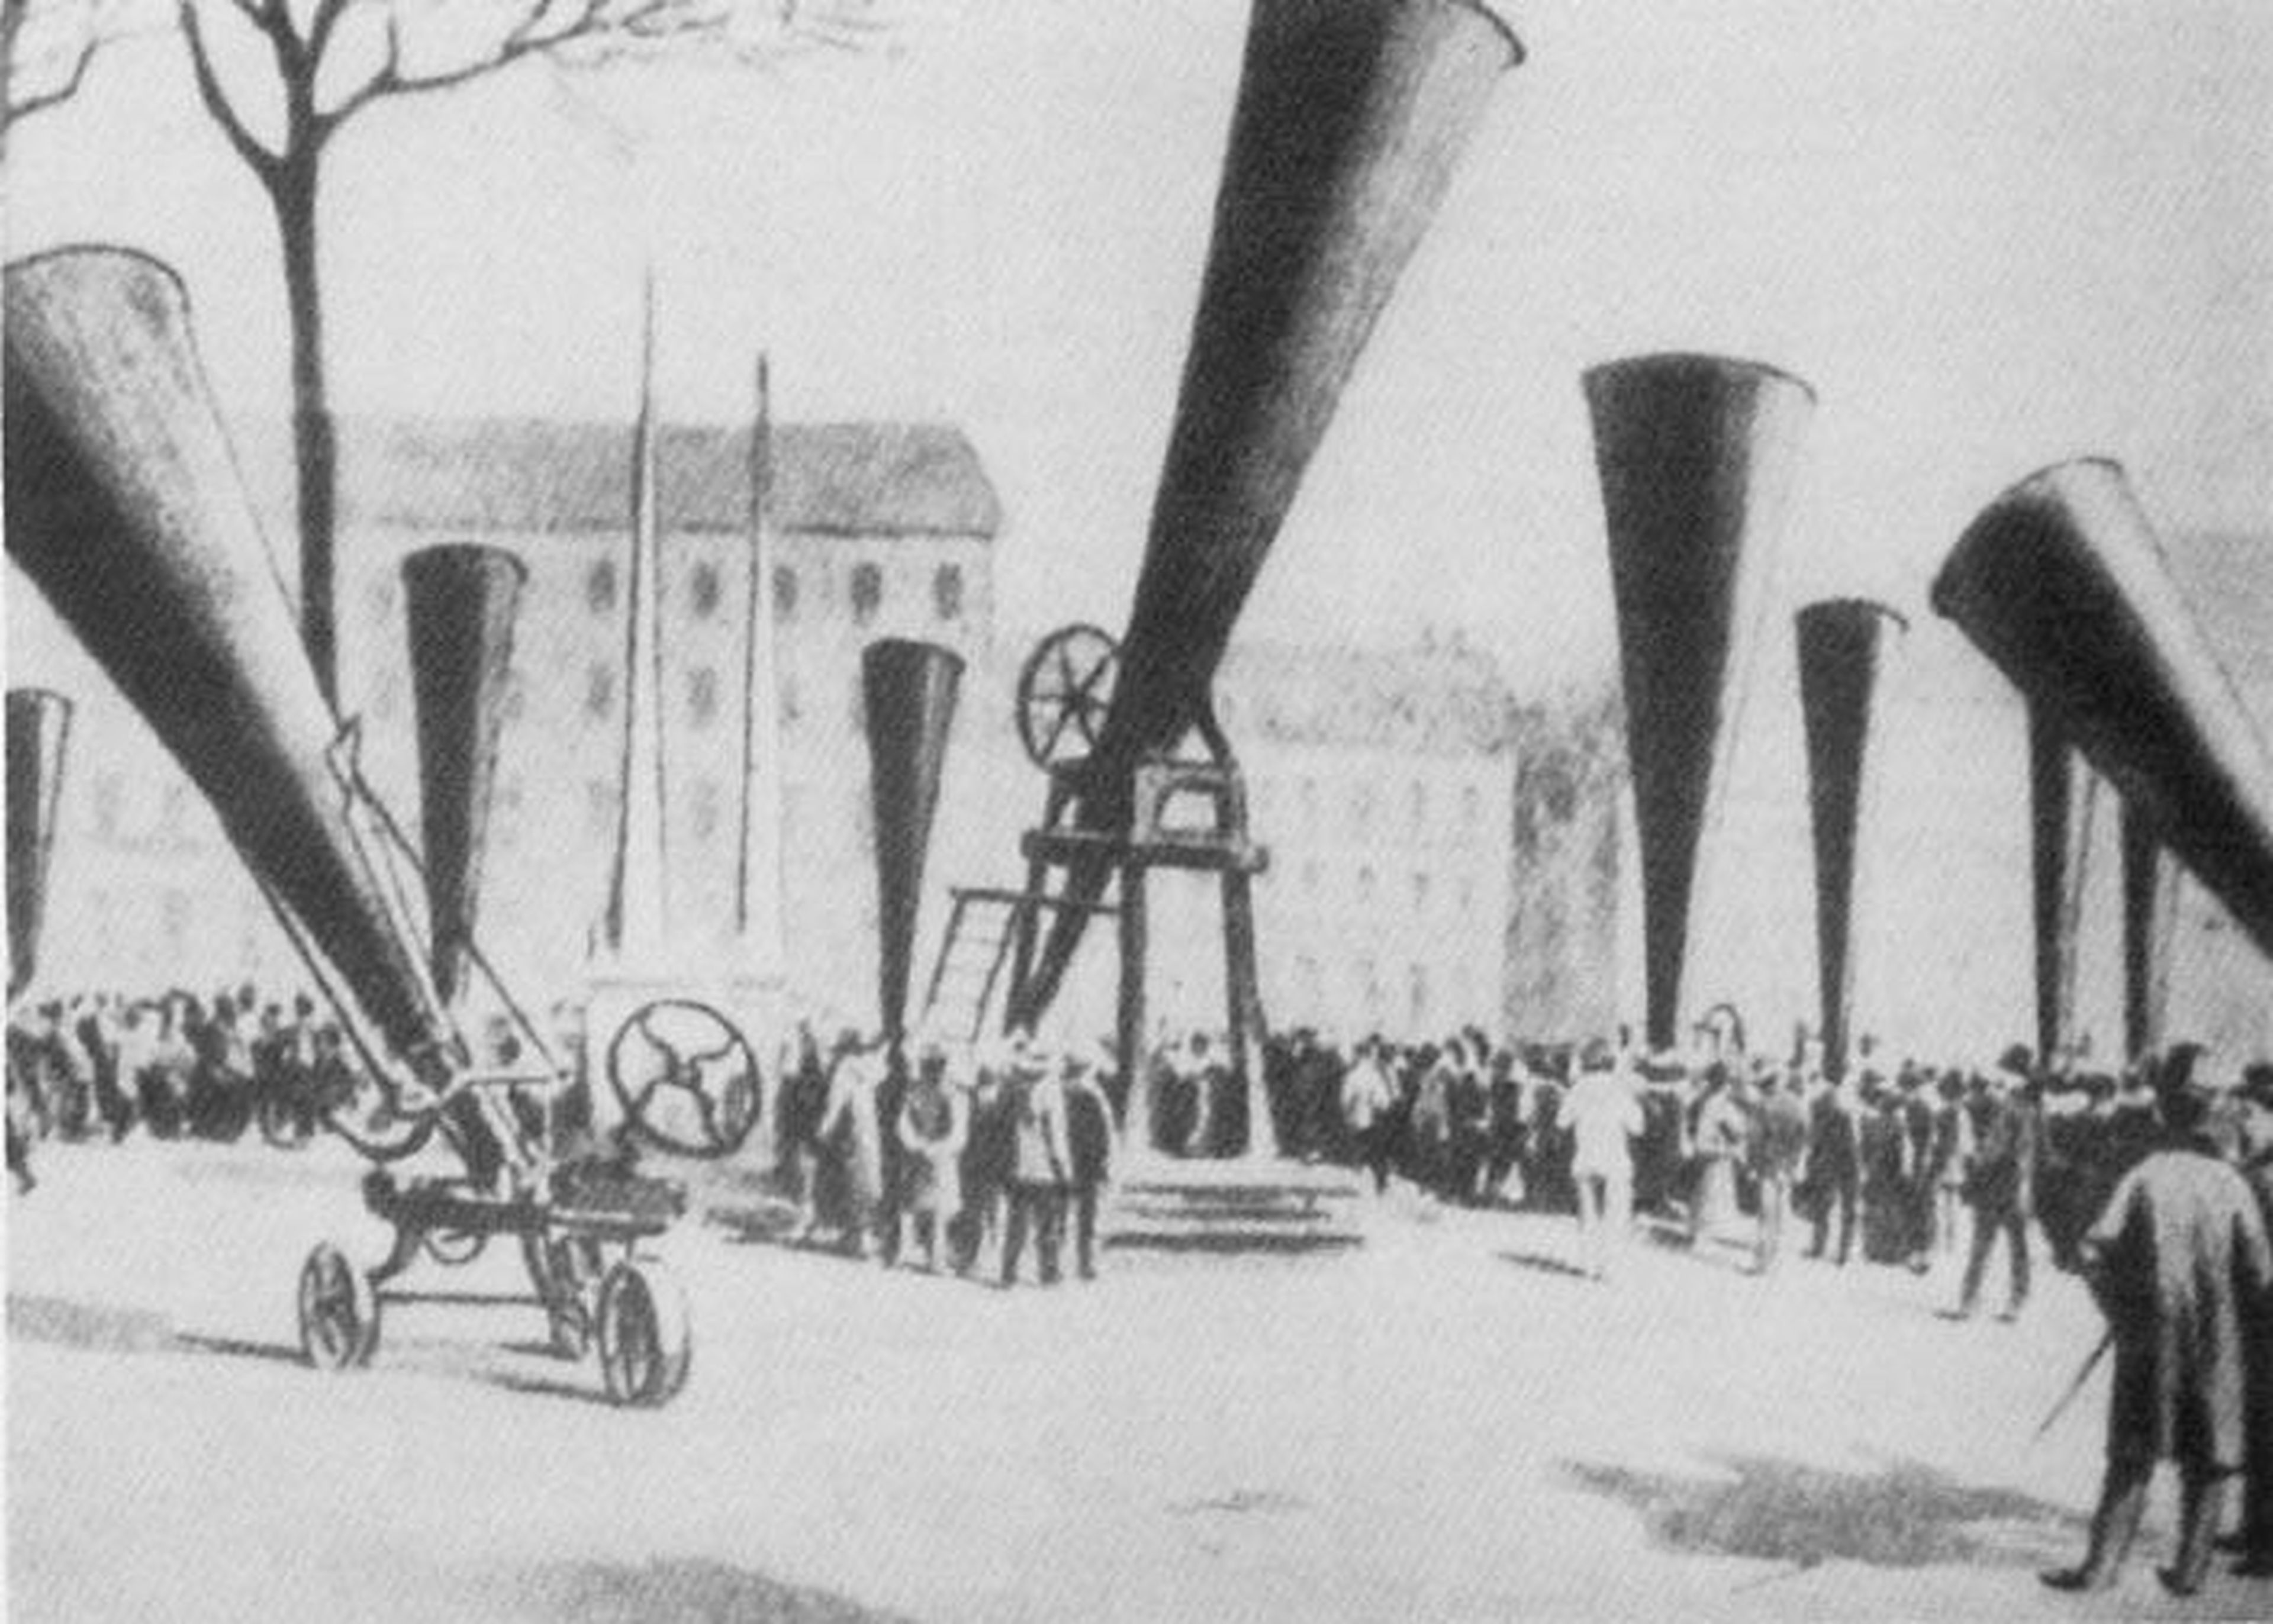 Una imagen de 1901 que muestra una concentración de cañones contra el granizo.